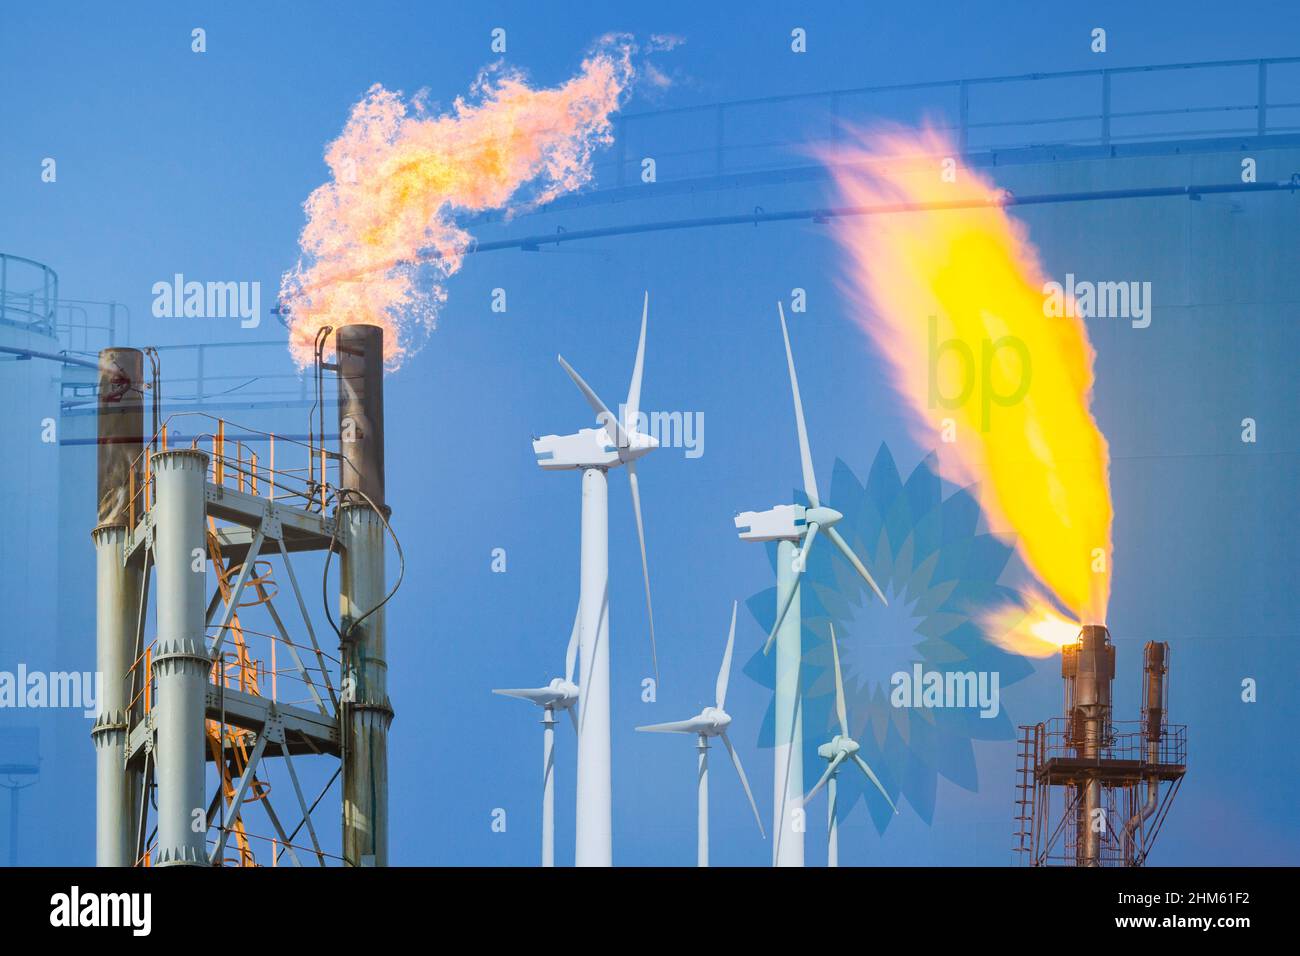 Réservoirs d'huile BP, de stockage de carburant. Image conceptuelle pour les combustibles fossiles, le gaz/pétrole de la mer du Nord, les énergies renouvelables, le changement climatique, nette zéro 2050, bénéfices de l'industrie pétrolière... Banque D'Images